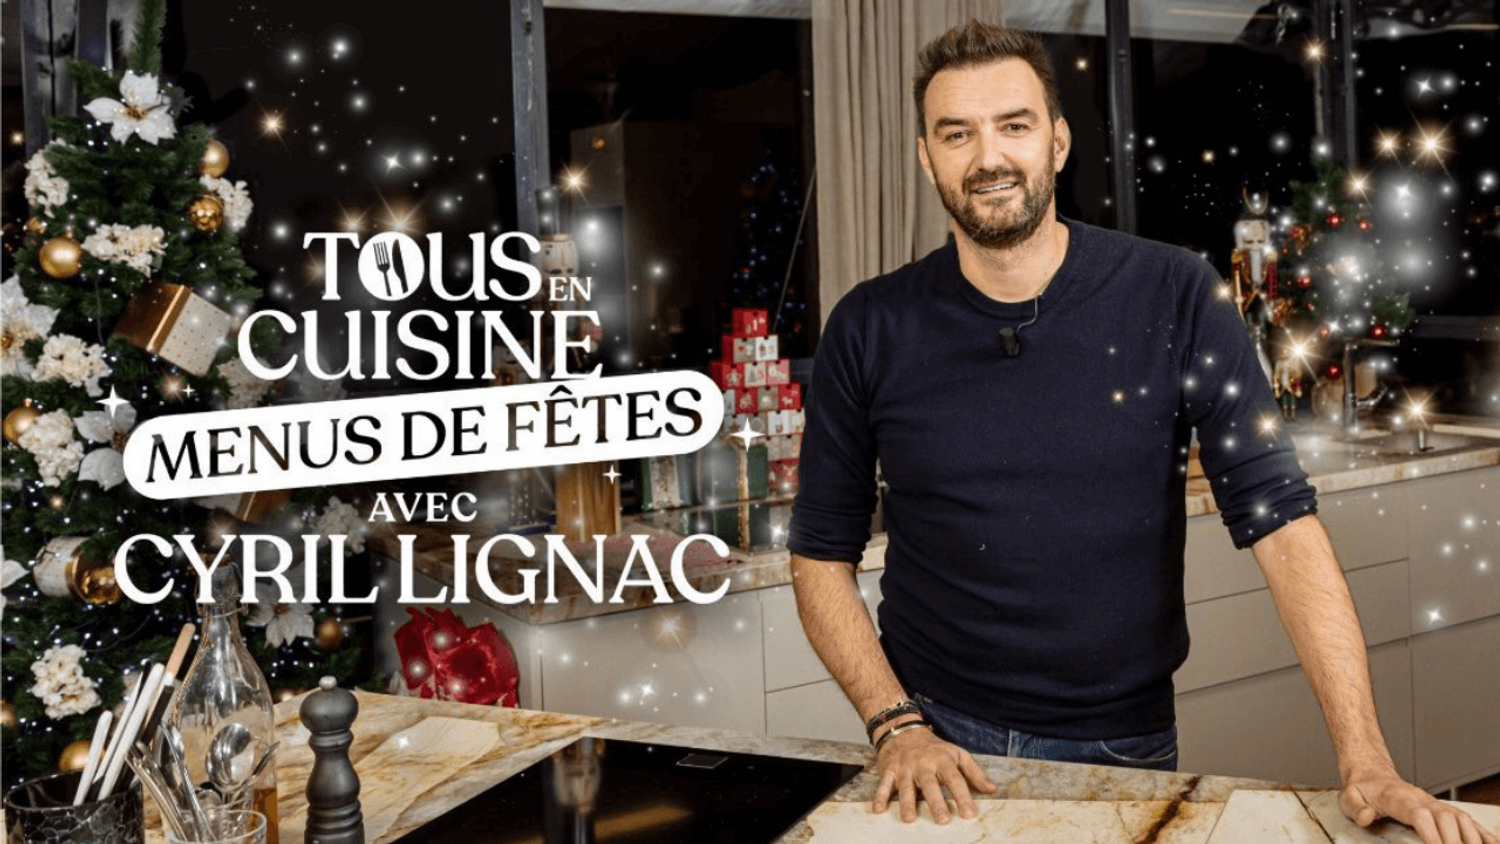 « Tous en cuisine » : Marlène Schiappa participera à l’émission M6 aux côtés de Cyril Lignac